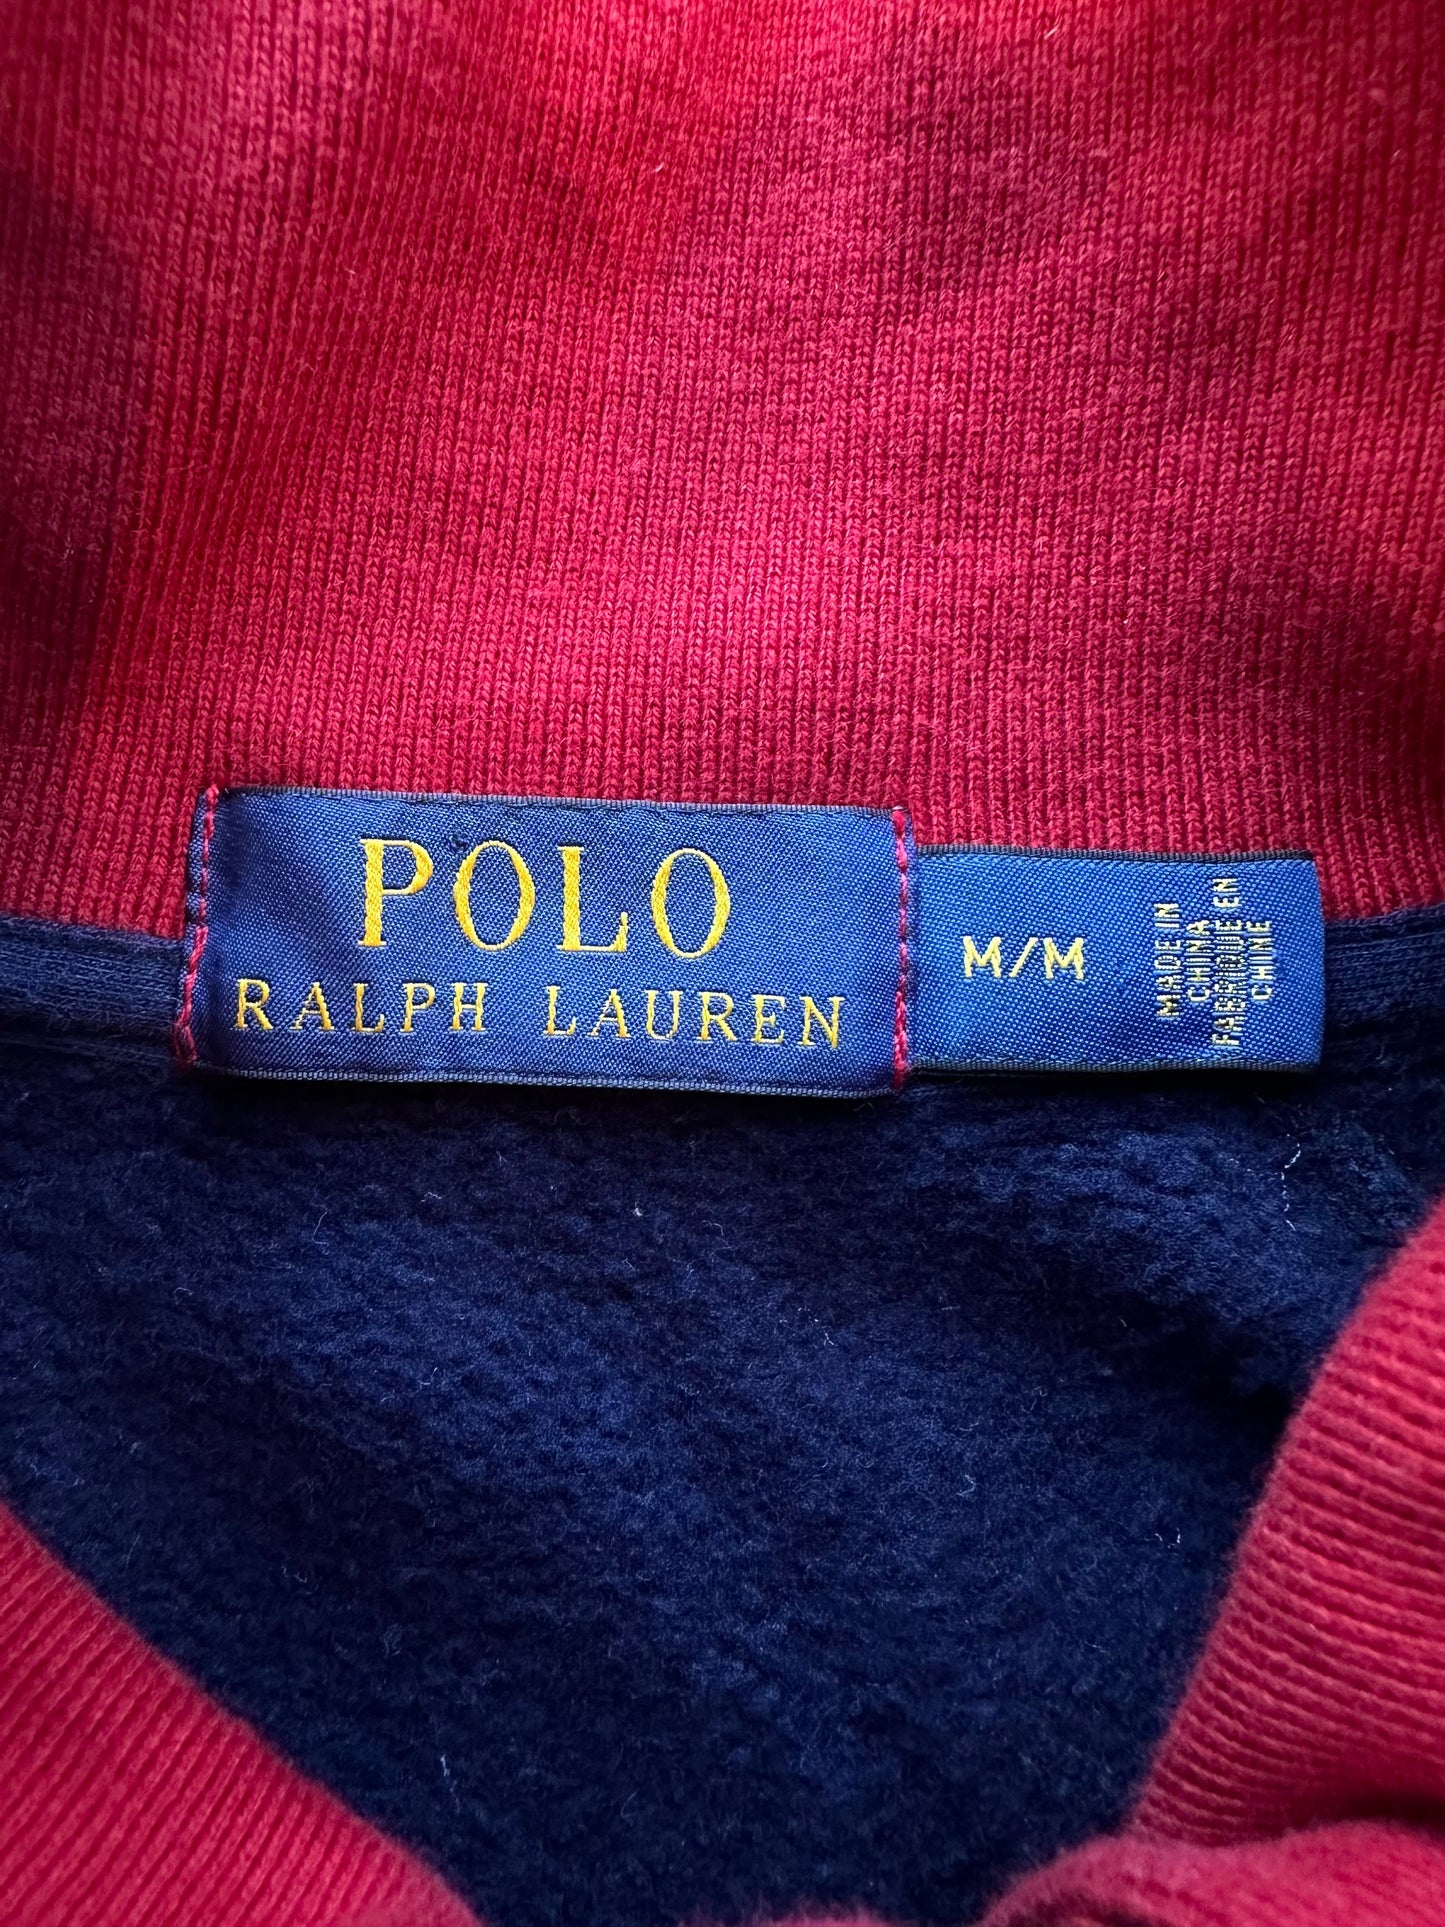 Polo Ralph Lauren Zip Up - M/L